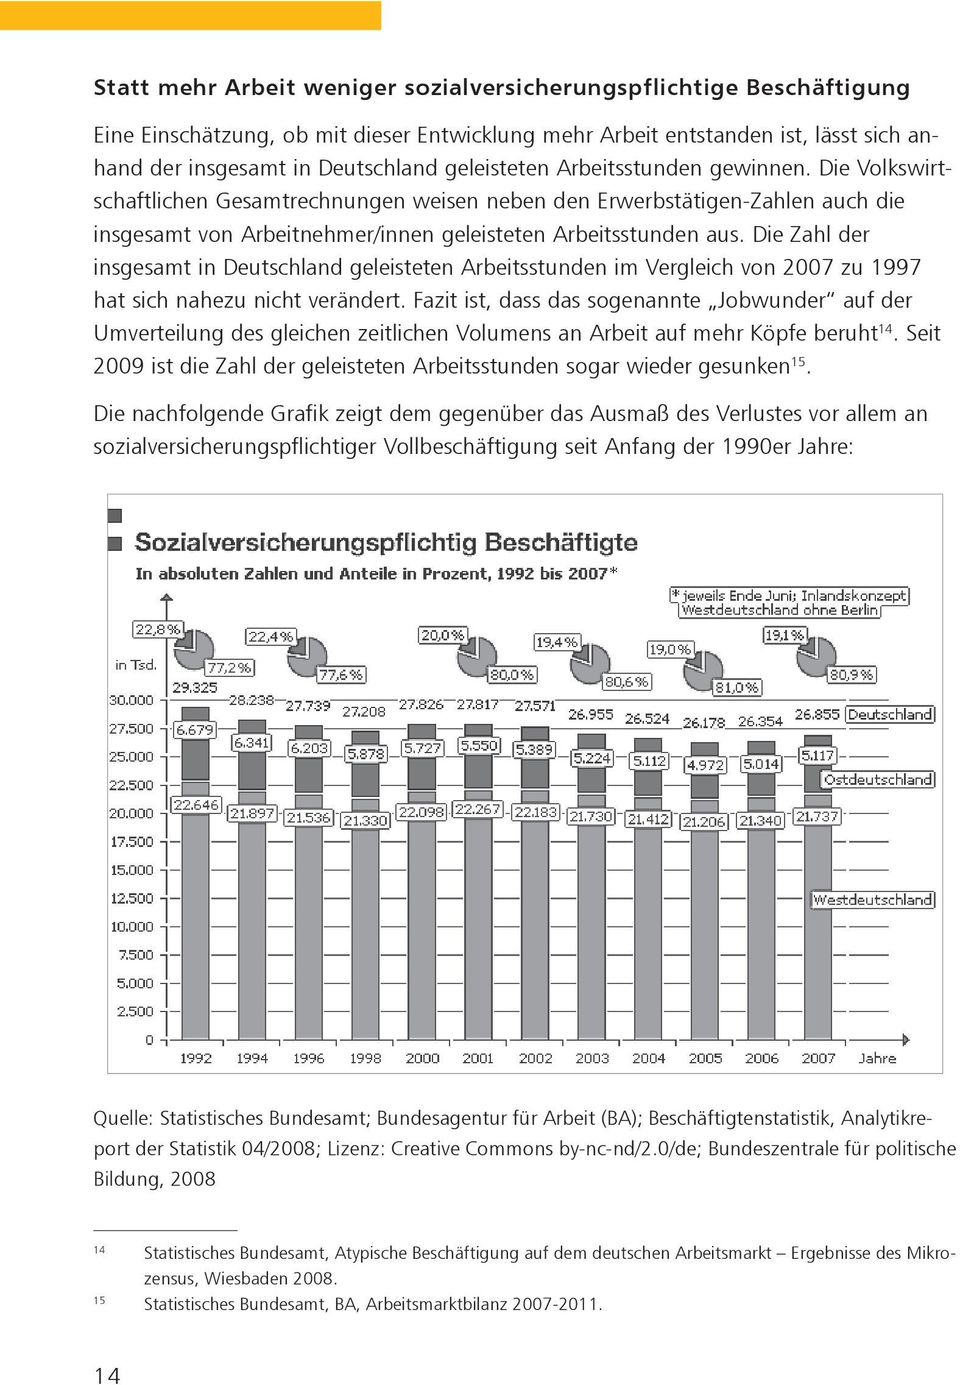 Die Zahl der insgesamt in Deutschland geleisteten Arbeitsstunden im Vergleich von 2007 zu 1997 hat sich nahezu nicht verändert.